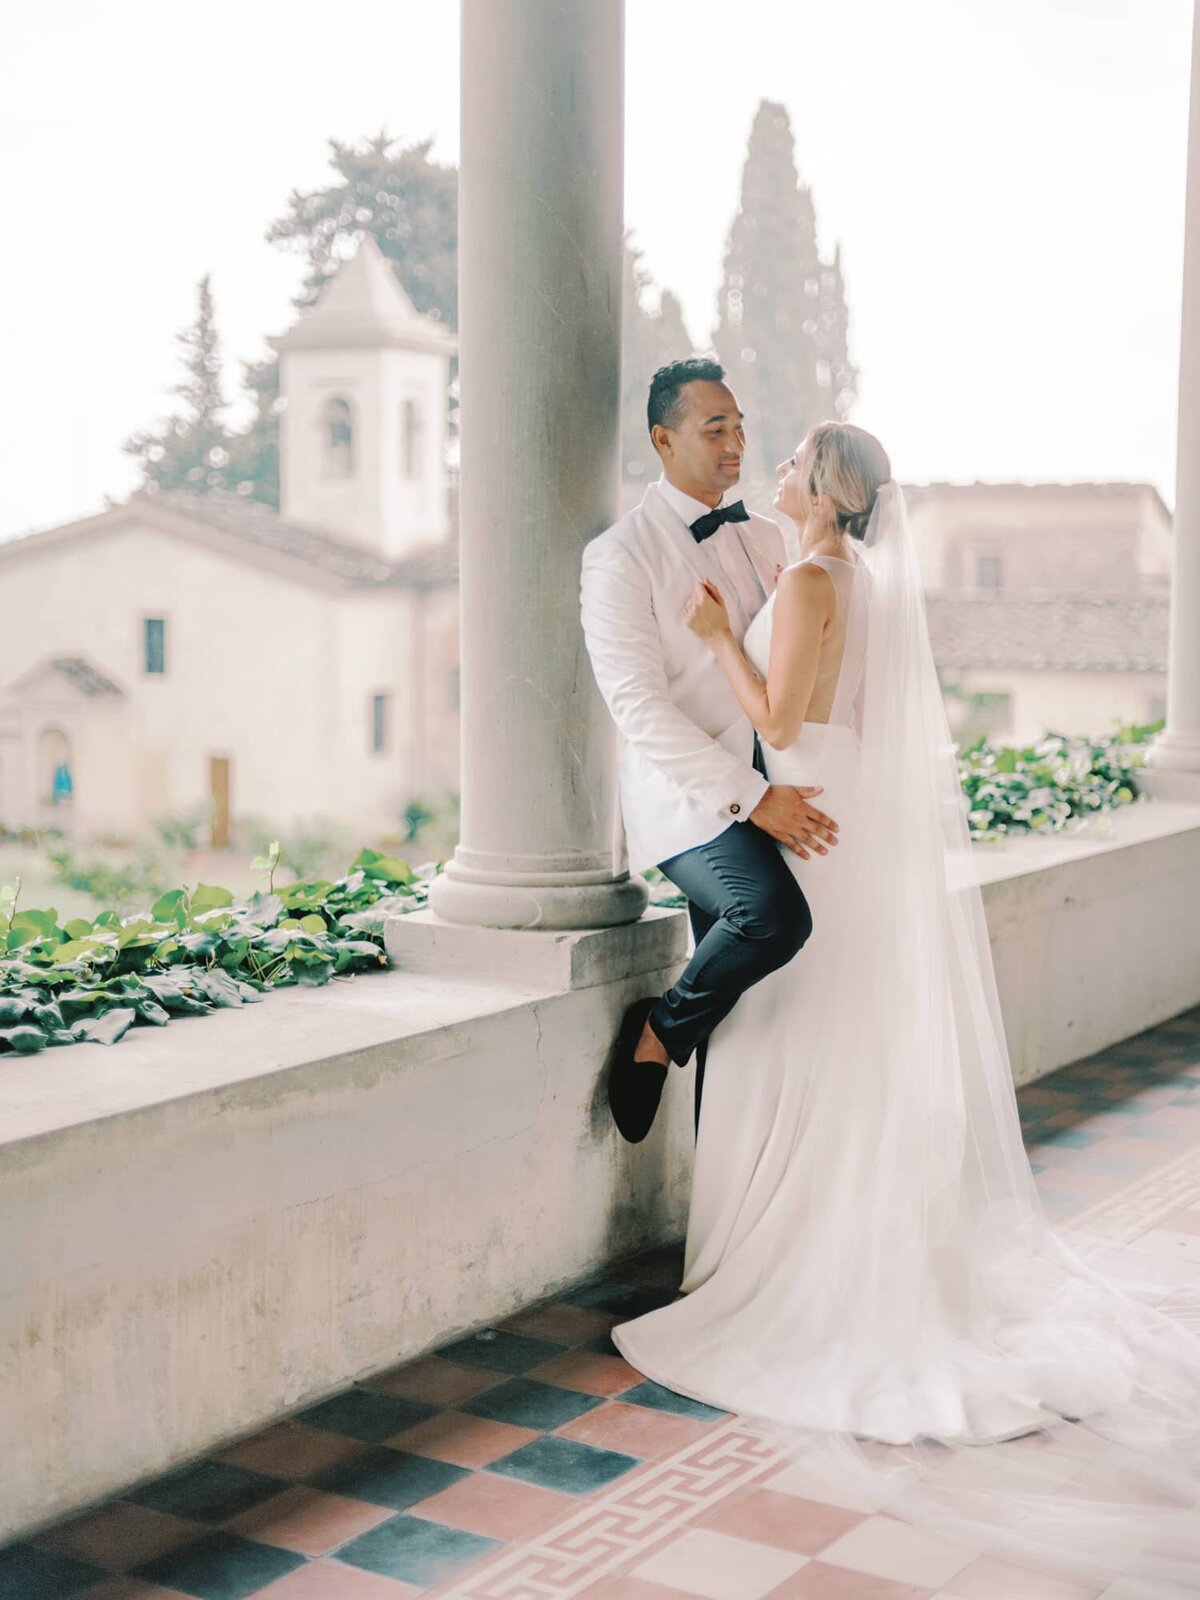 AndreasKGeorgiou-Tuscany-wedding-Italy-59